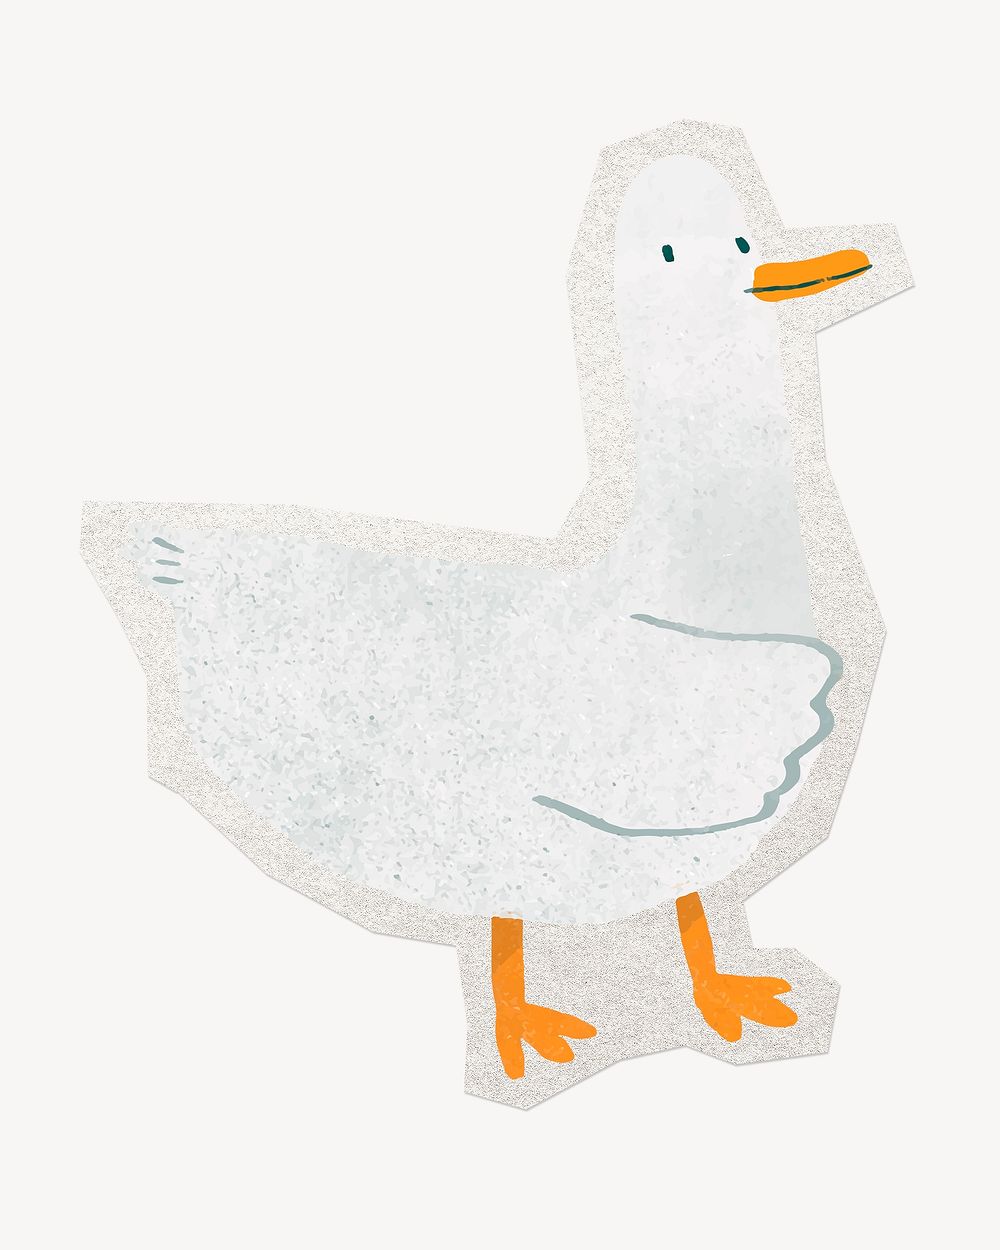 Cute duck, bird animal clipart sticker, paper craft collage element